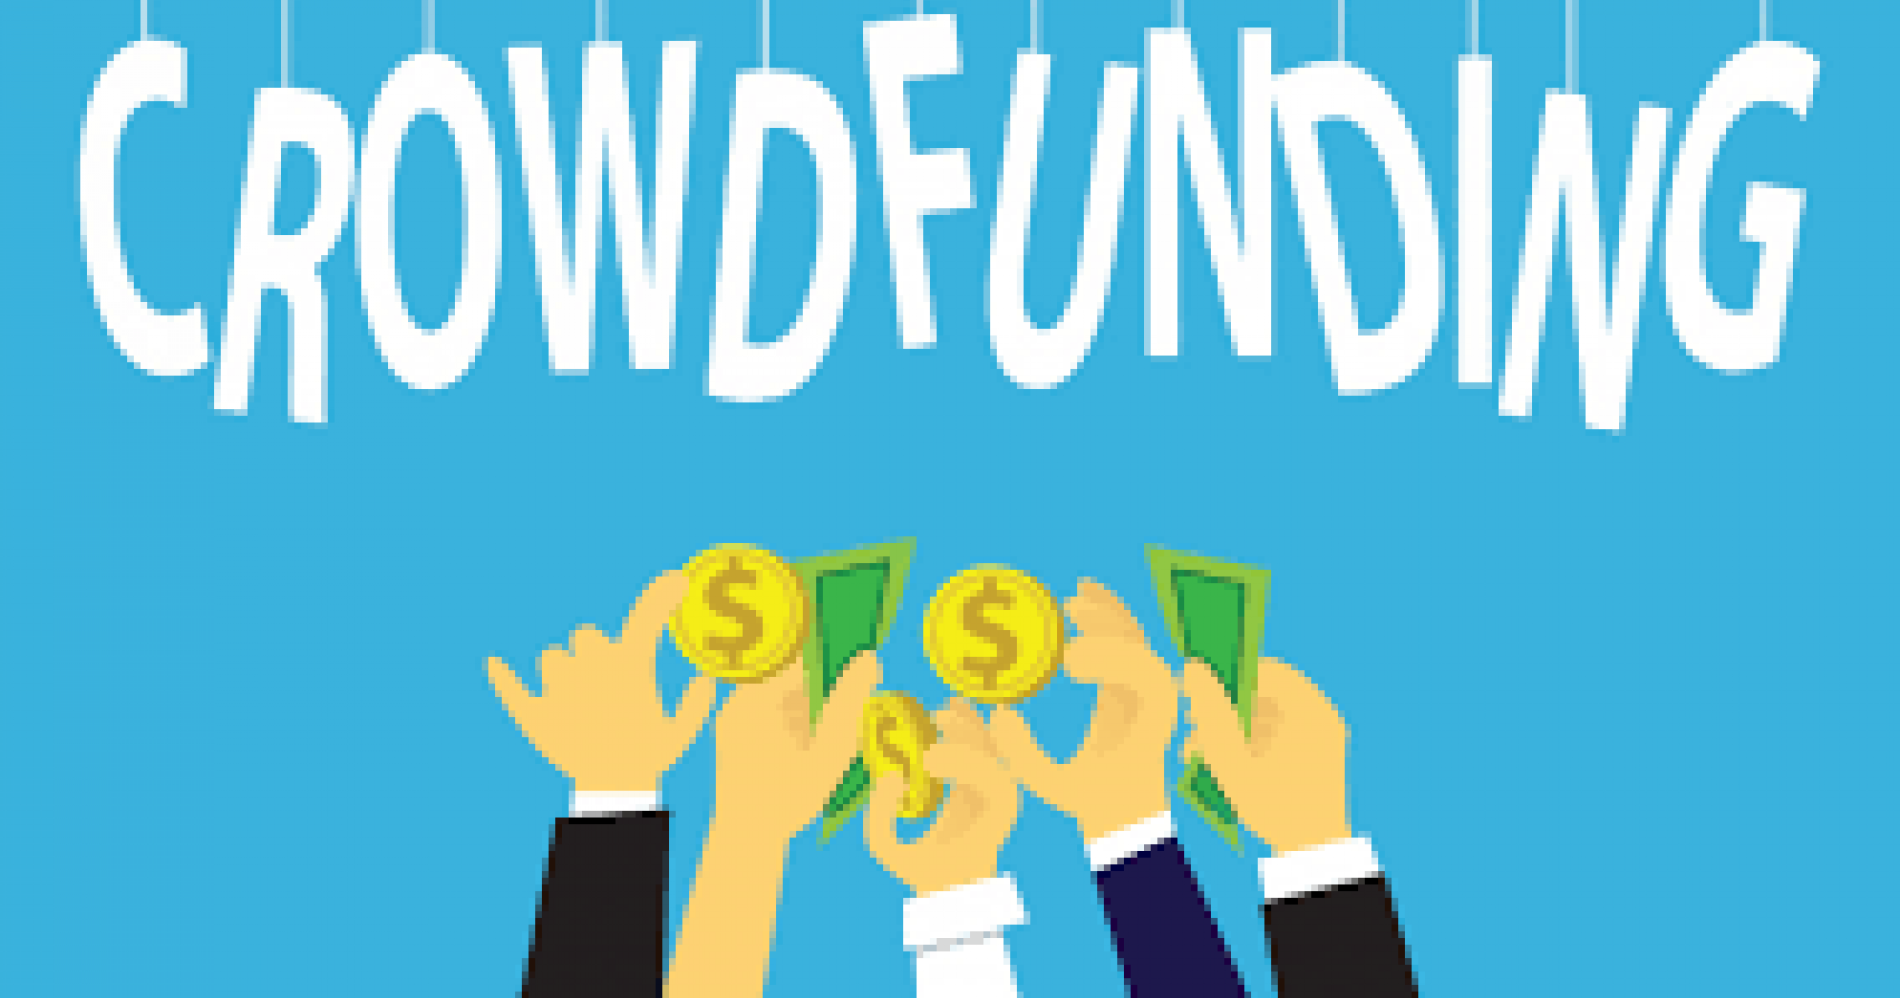 Metode Crowdfunding sebagai salah satu alternatif pendanaan untuk pelaku usaha (Sumber : crowdengine.com)